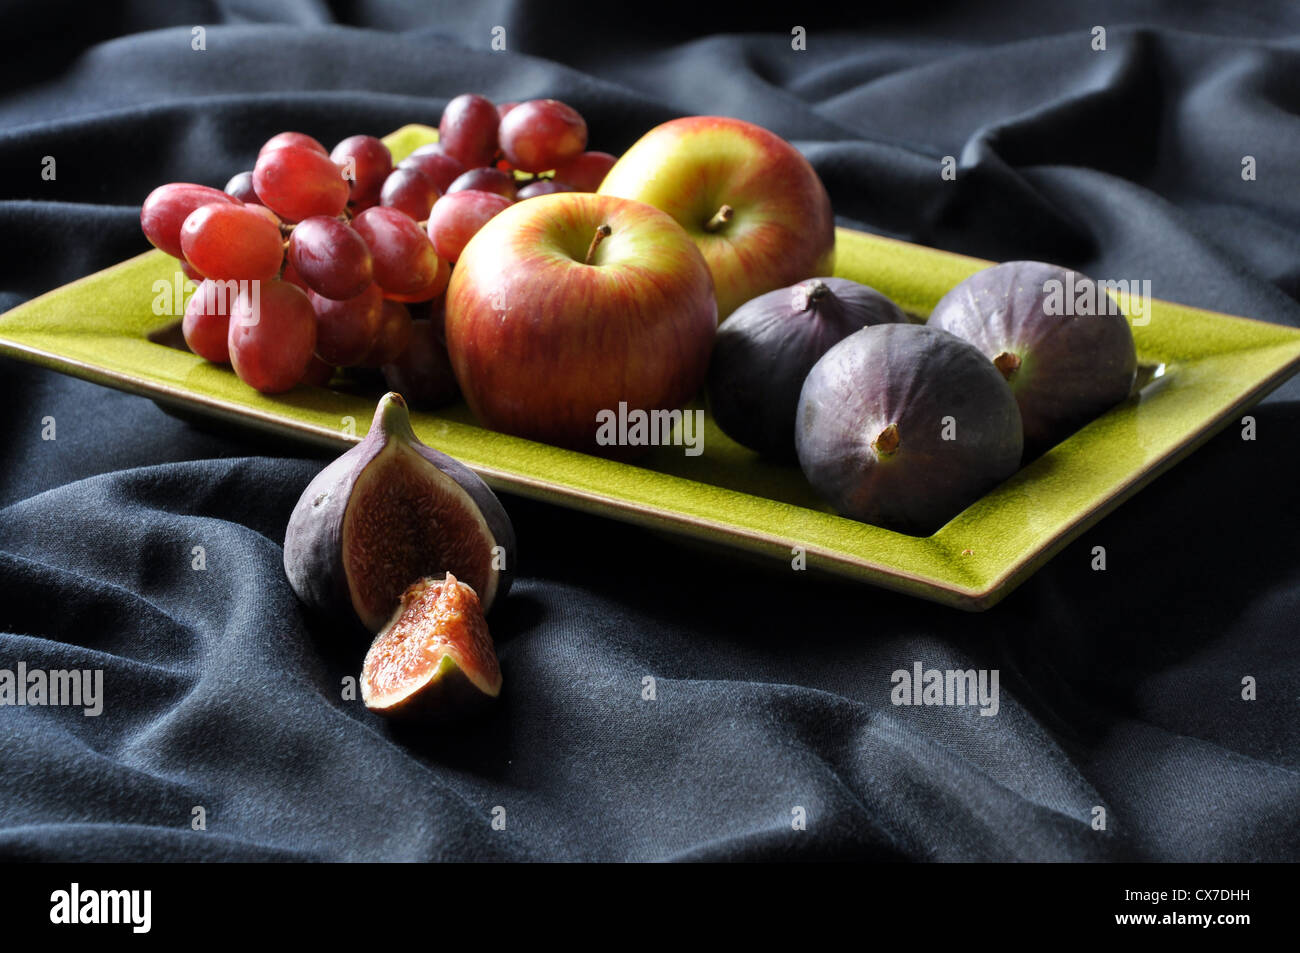 Plato de frutas - un bodegón de un plato de frutas variadas. Foto de stock